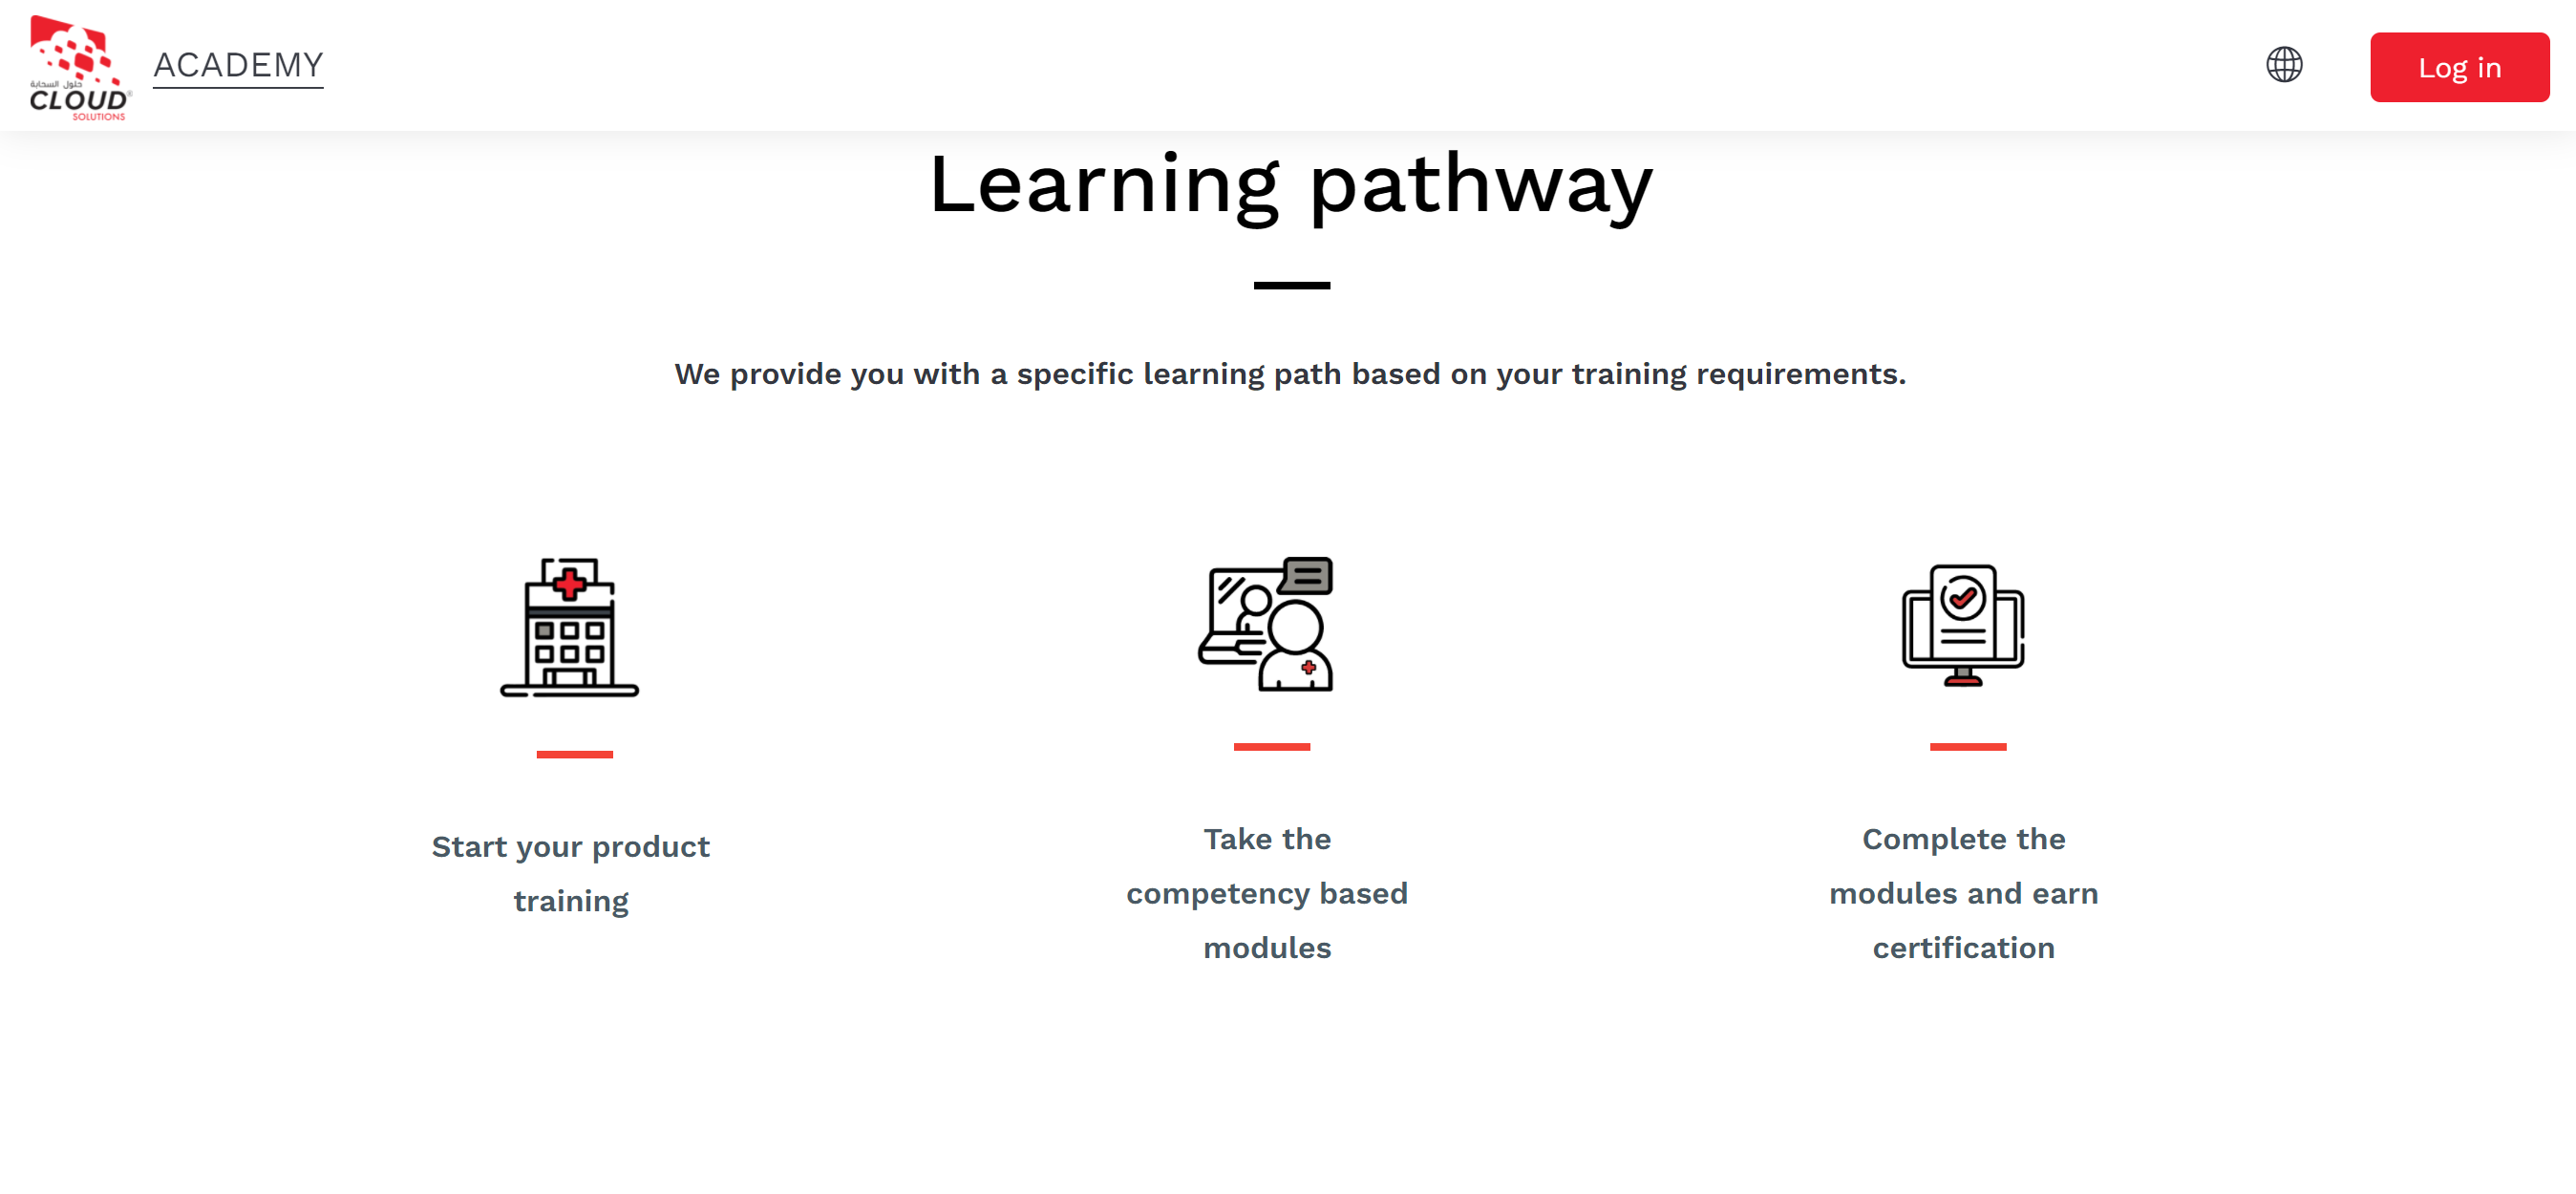 Il sito Moodle di Cloud Solutions Support che mostra 3 percorsi di apprendimento disponibili per i propri utenti, in base ai loro requisiti di formazione: inizia la formazione sul prodotto; Prendi i moduli basati sulle competenze; Completa i moduli e ottieni la certificazione